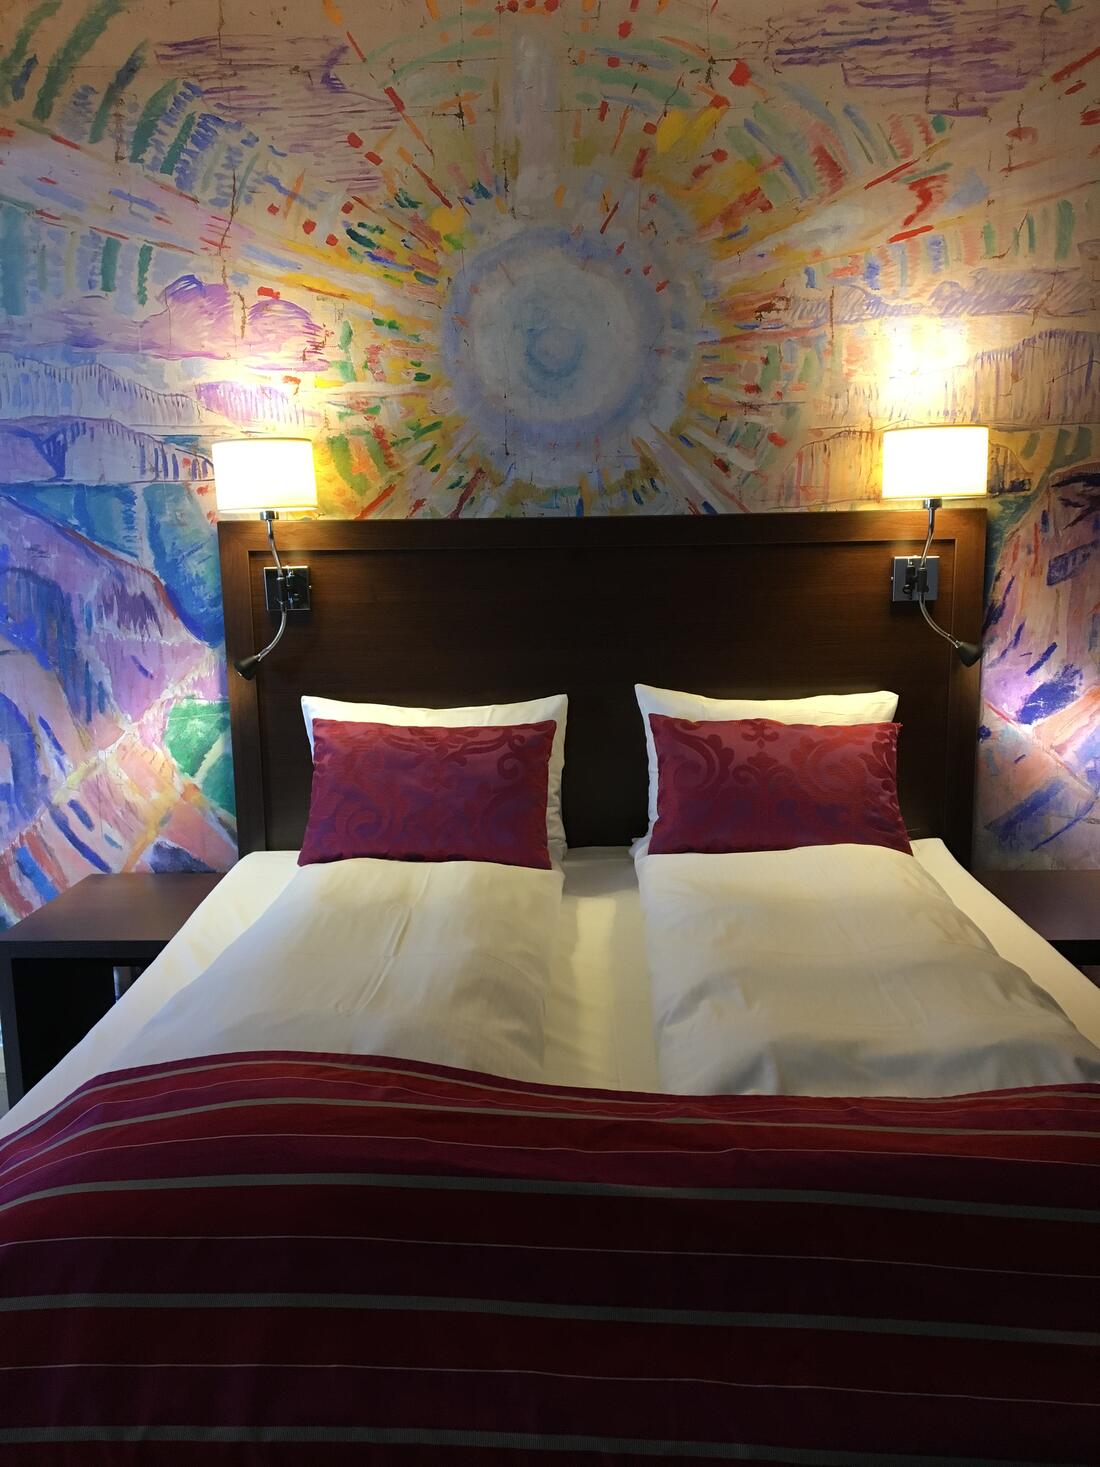 Suite på hotell med Munch-kunstverk over hele veggen